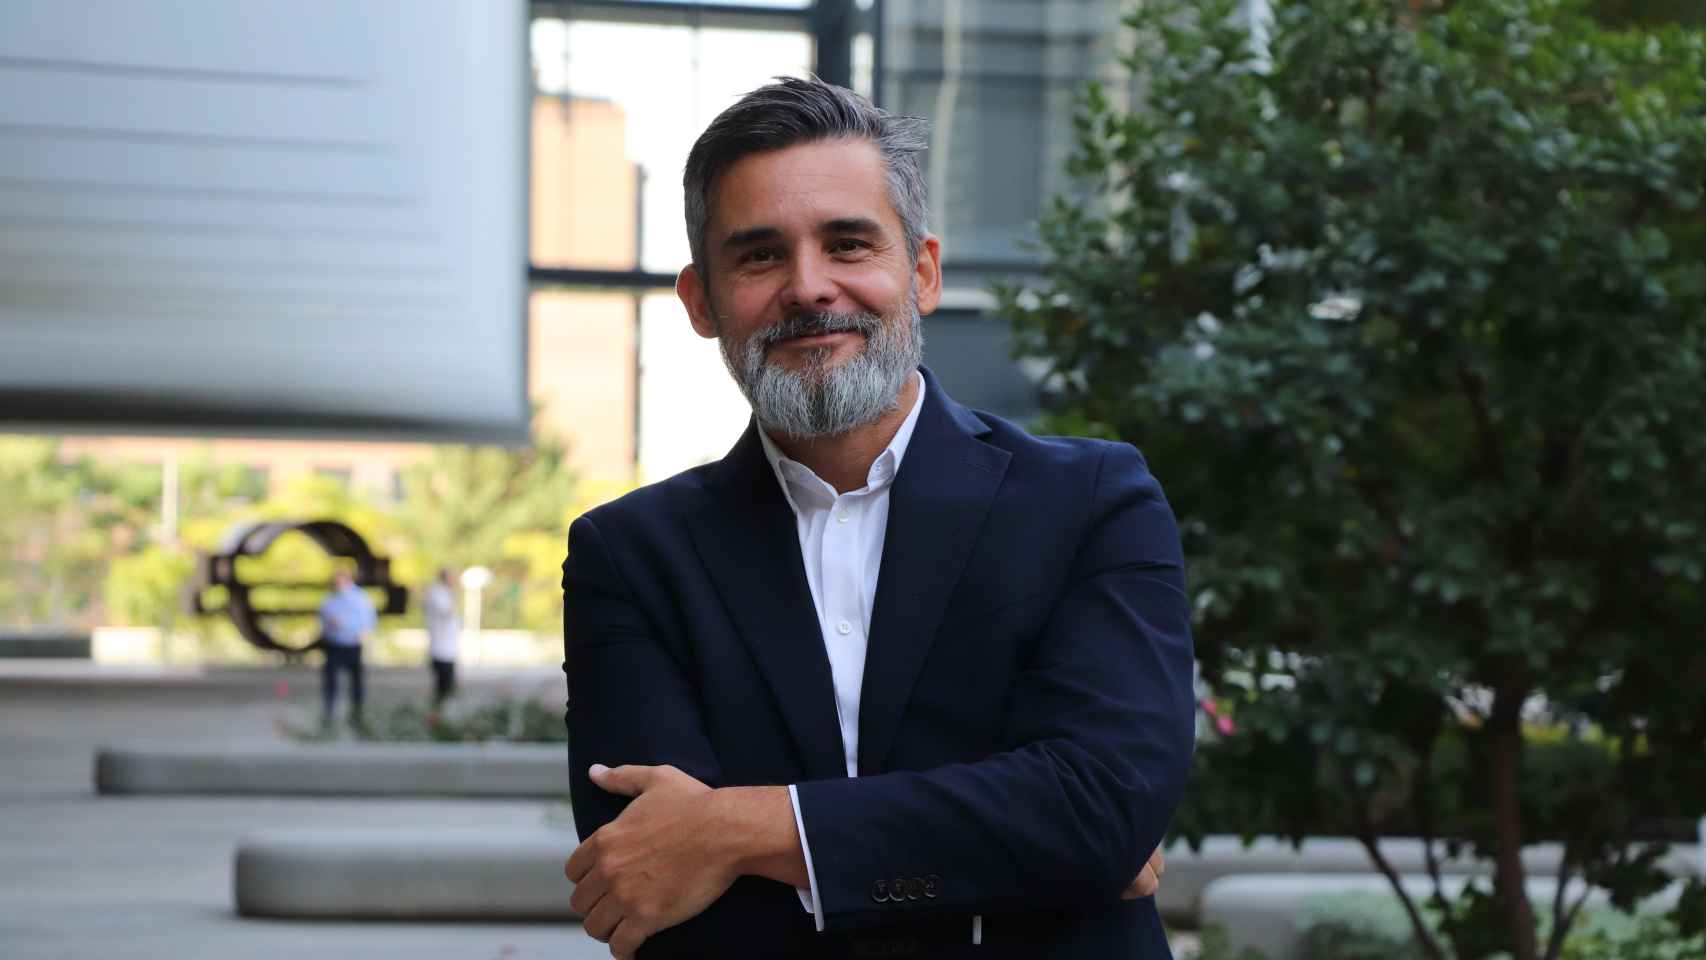 Valero Marín es el CIO (Chief Information Officer) y CDO (Chief Digital Officer) de Repsol.